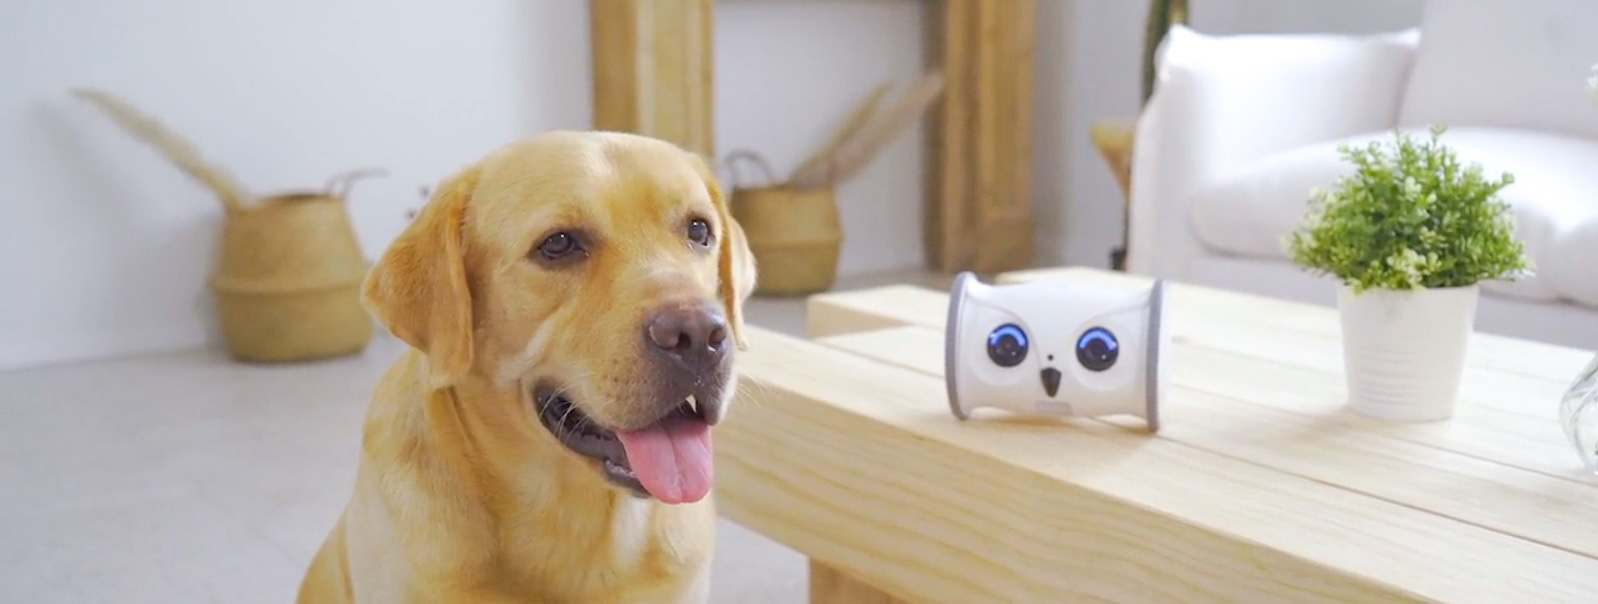 Owl robot - новая интерактивная игрушка для домашних животных